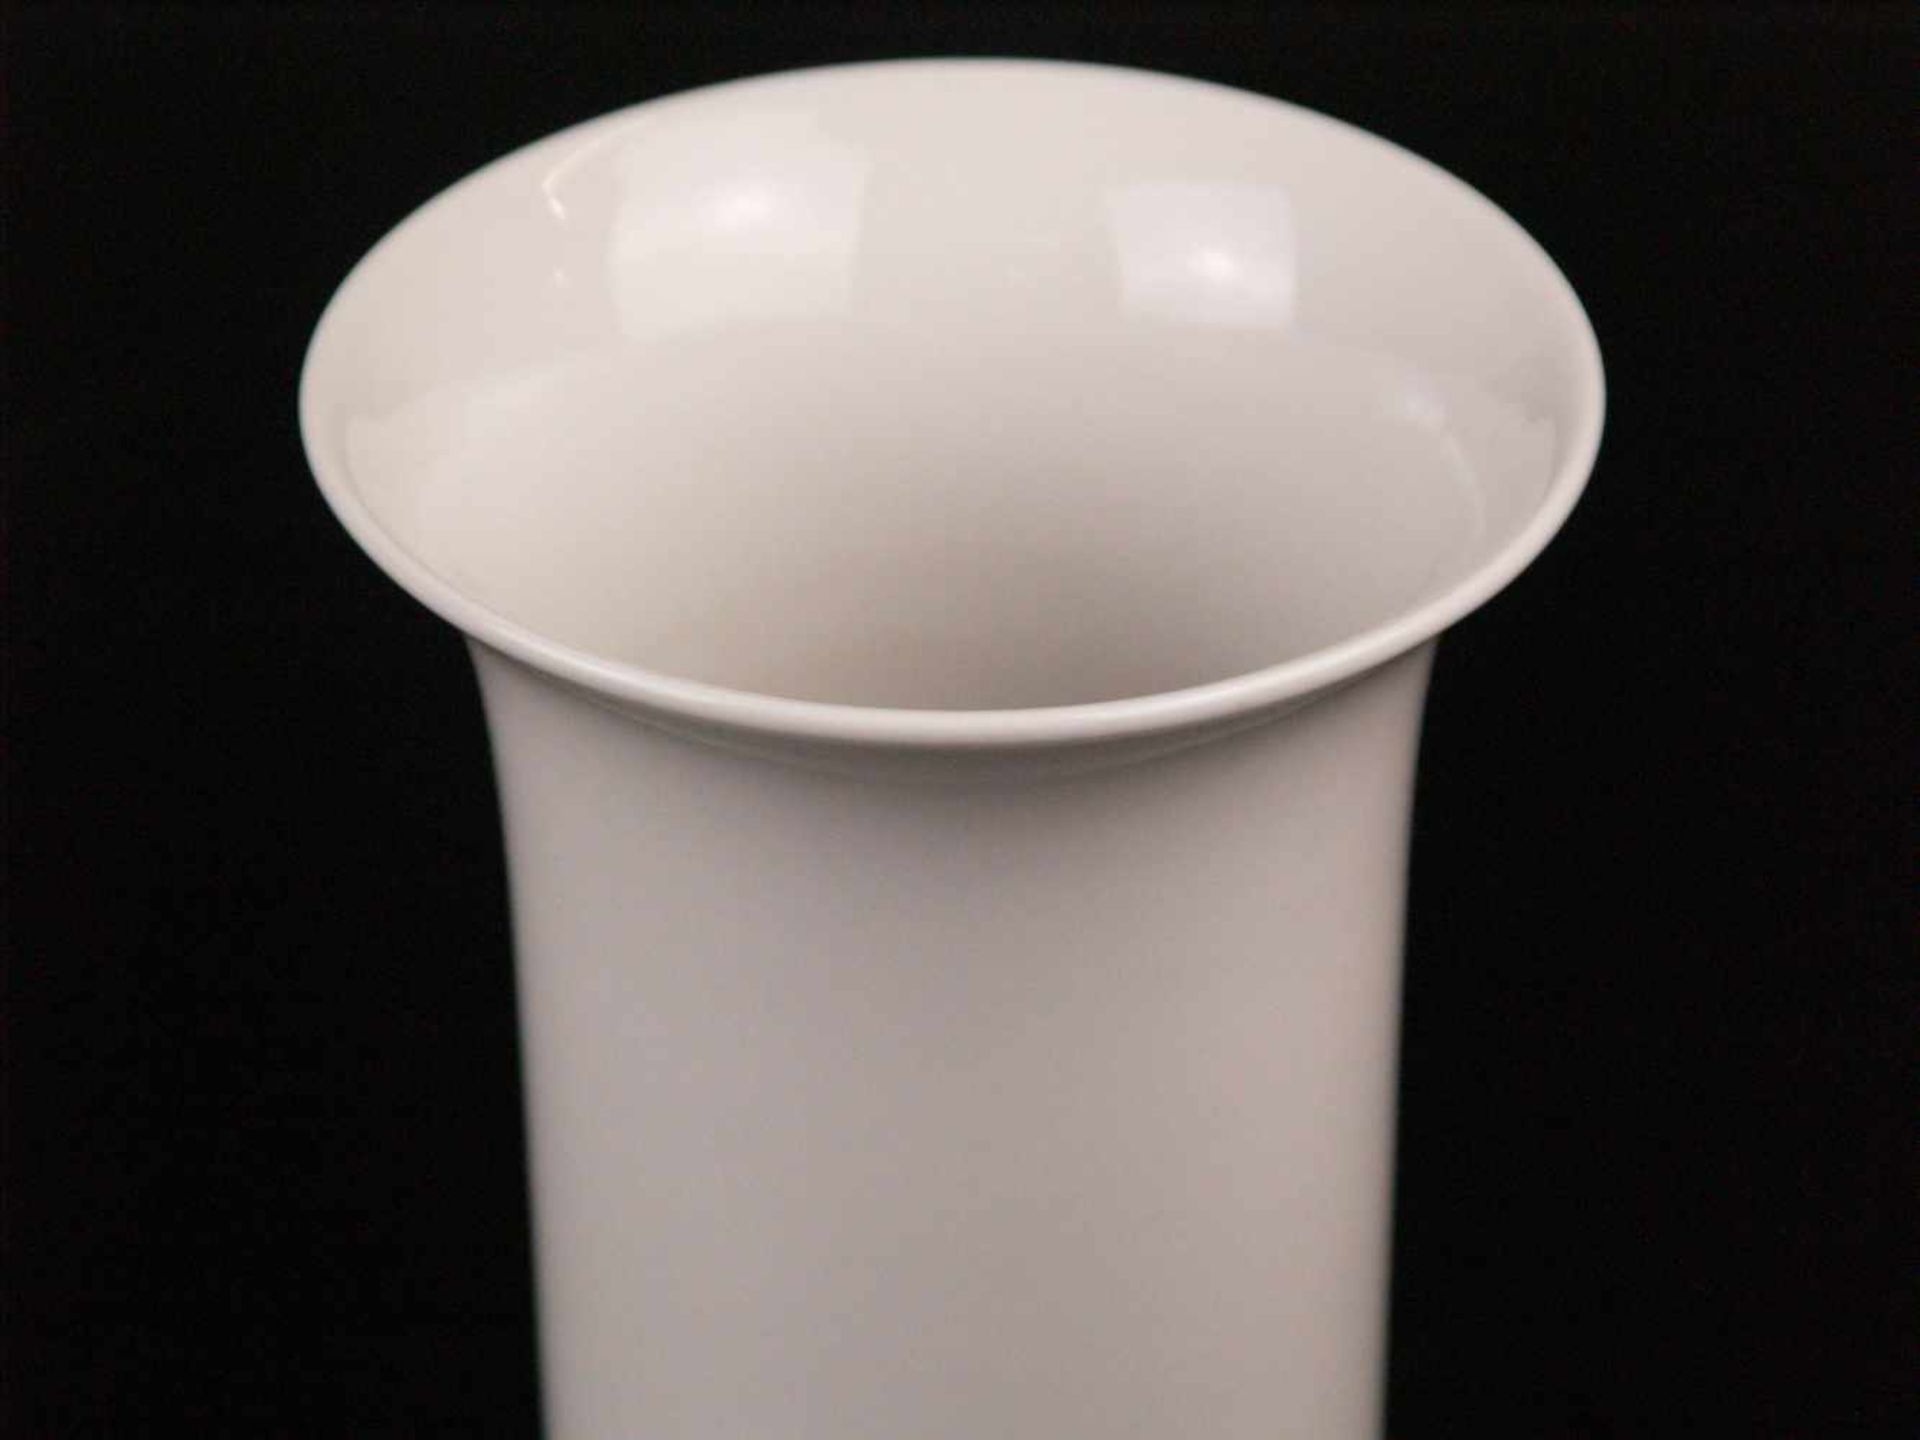 Vase - am Boden blaue Radmarke undeutlich bez. "Höchst", weiße Porzellan glasiert, zylindrische Form - Bild 2 aus 3